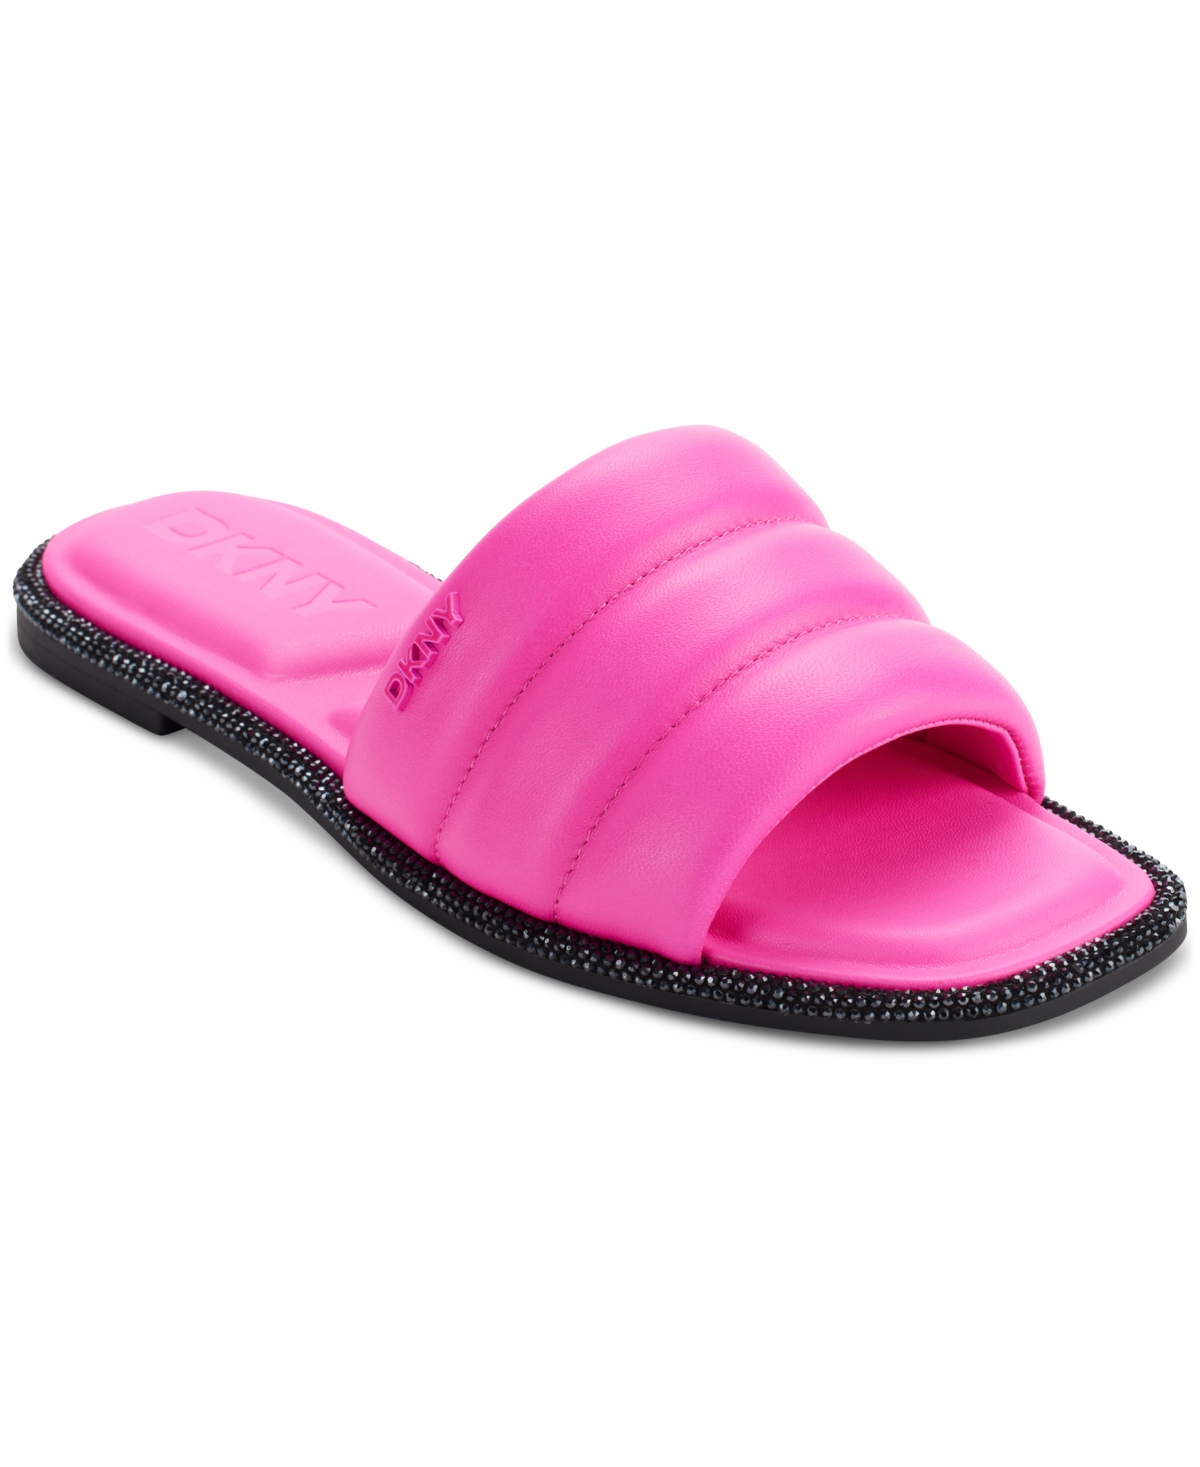 Bethea Quilted Slip-On Slide Sandals - Black